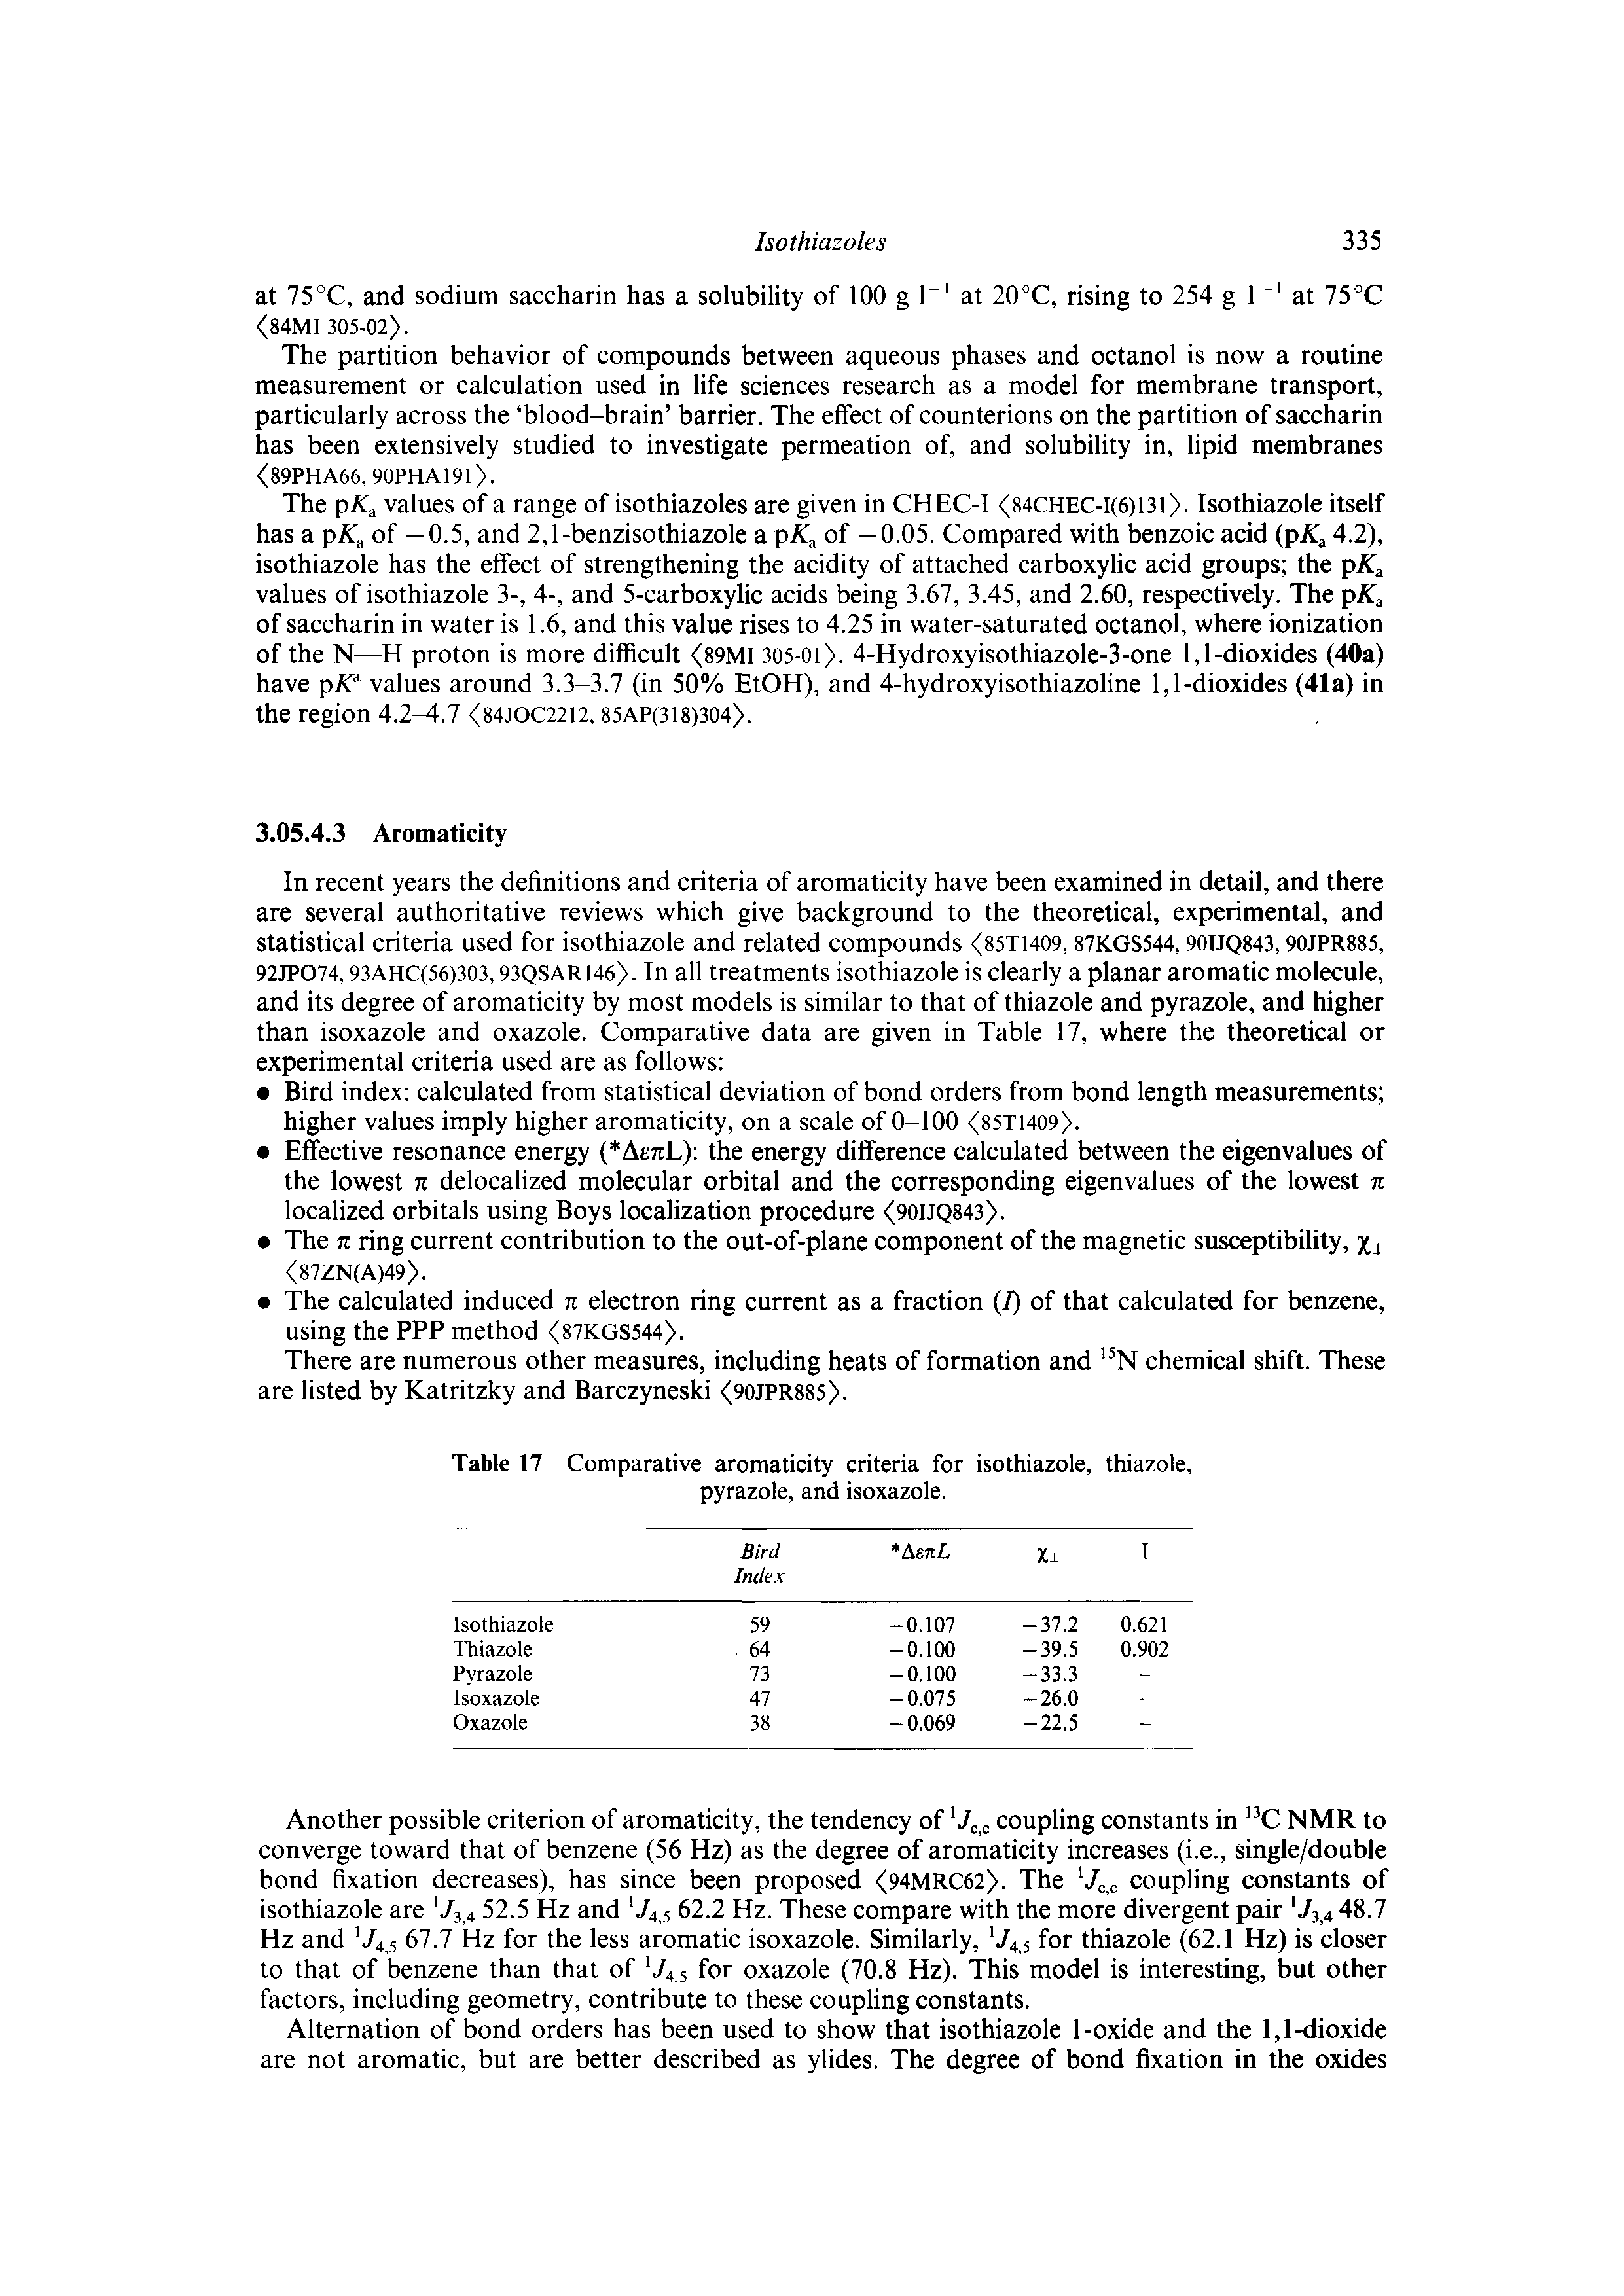 Table 17 Comparative aromaticity criteria for isothiazole, thiazole, pyrazole, and isoxazole.